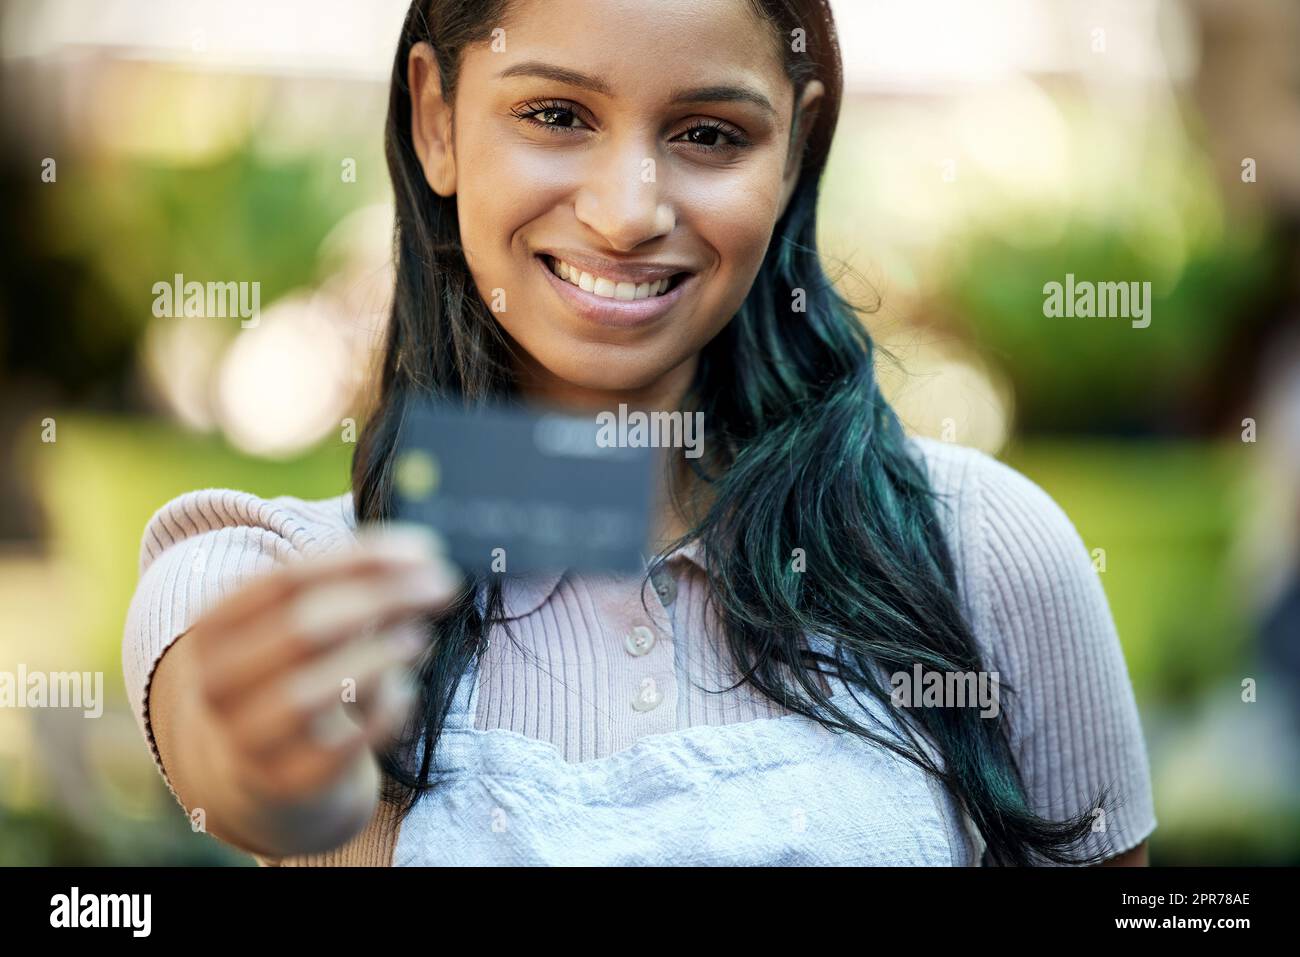 Mit kontaktlosem Banking wird der Alltag einfacher. Aufnahme eines jungen Geschäftsinhabers mit Kreditkarte. Stockfoto